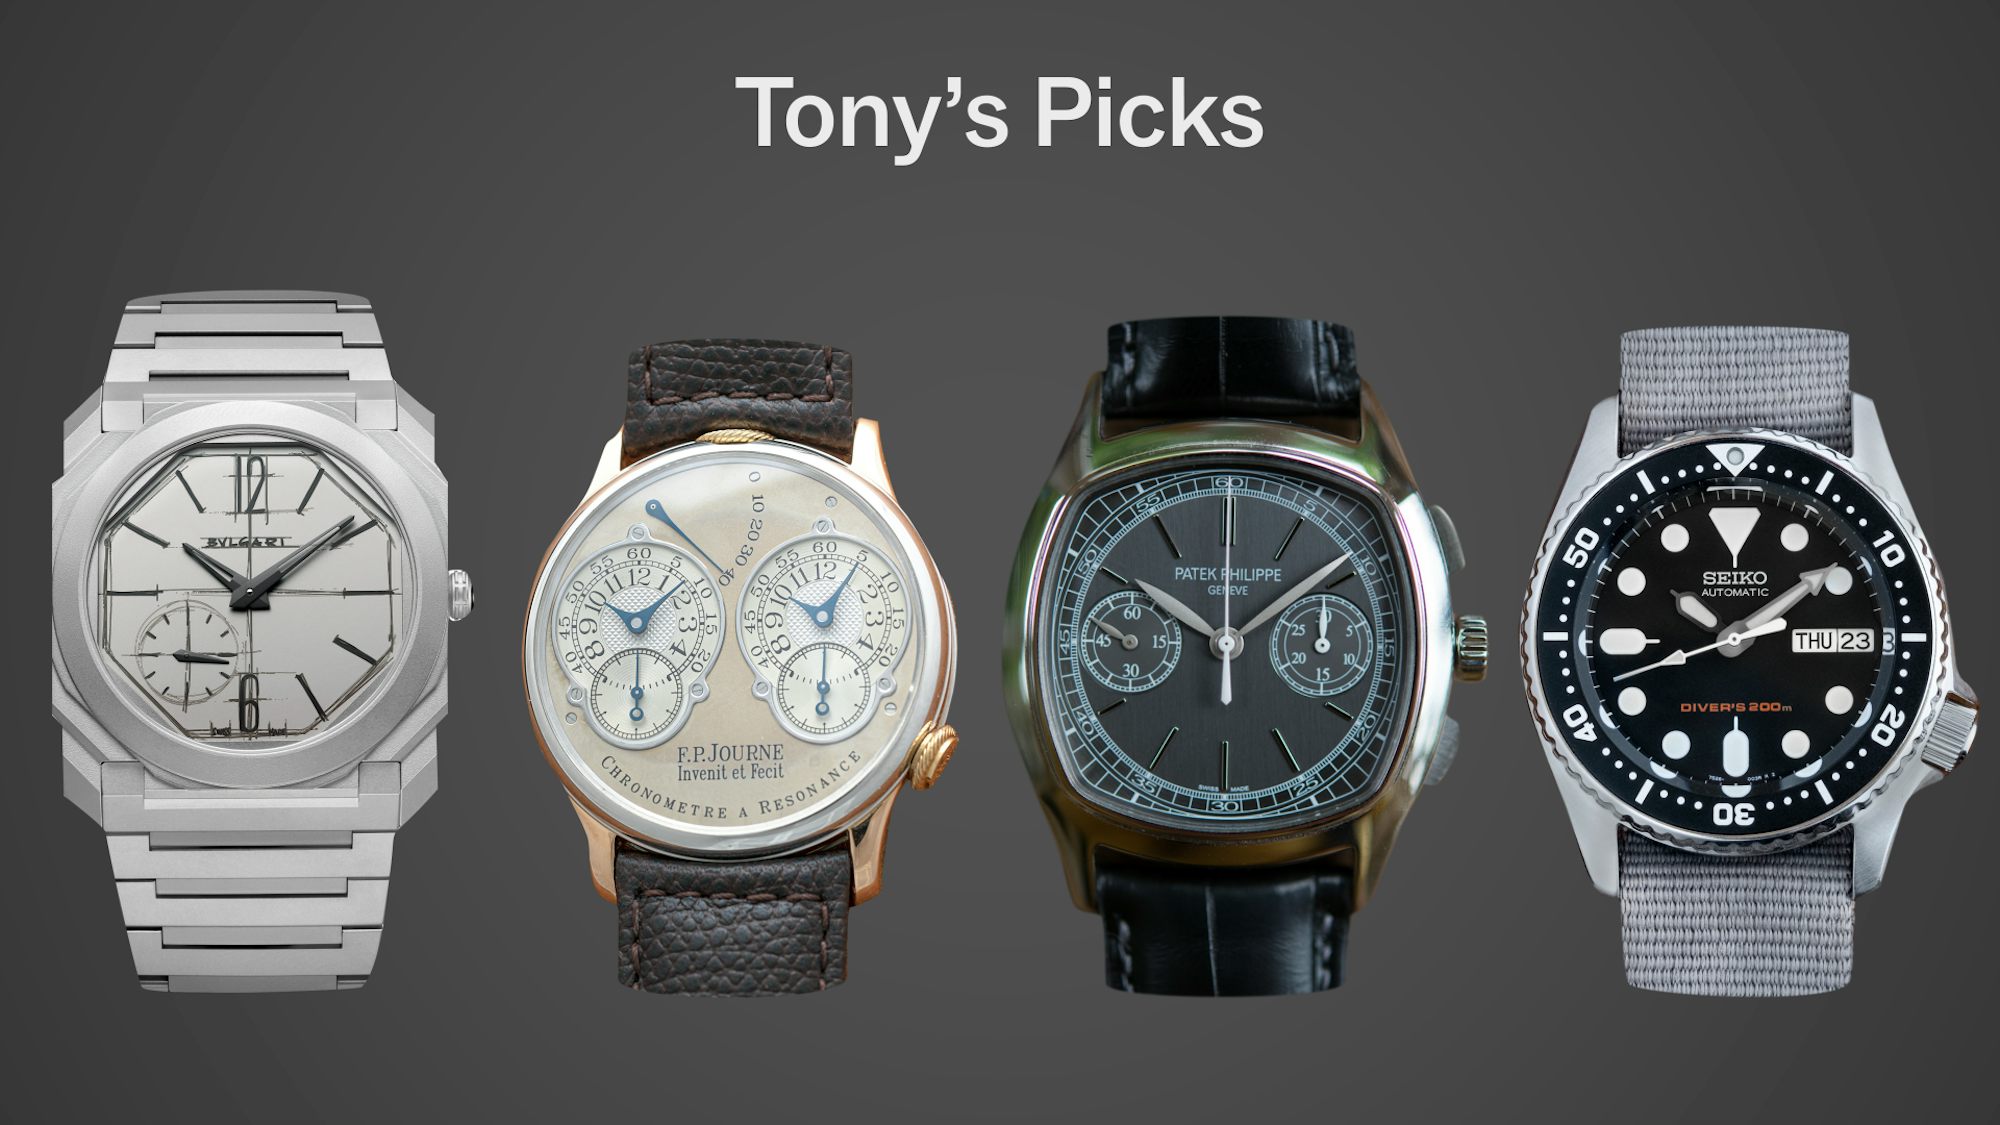 hodinkee editor best watches of 21st century